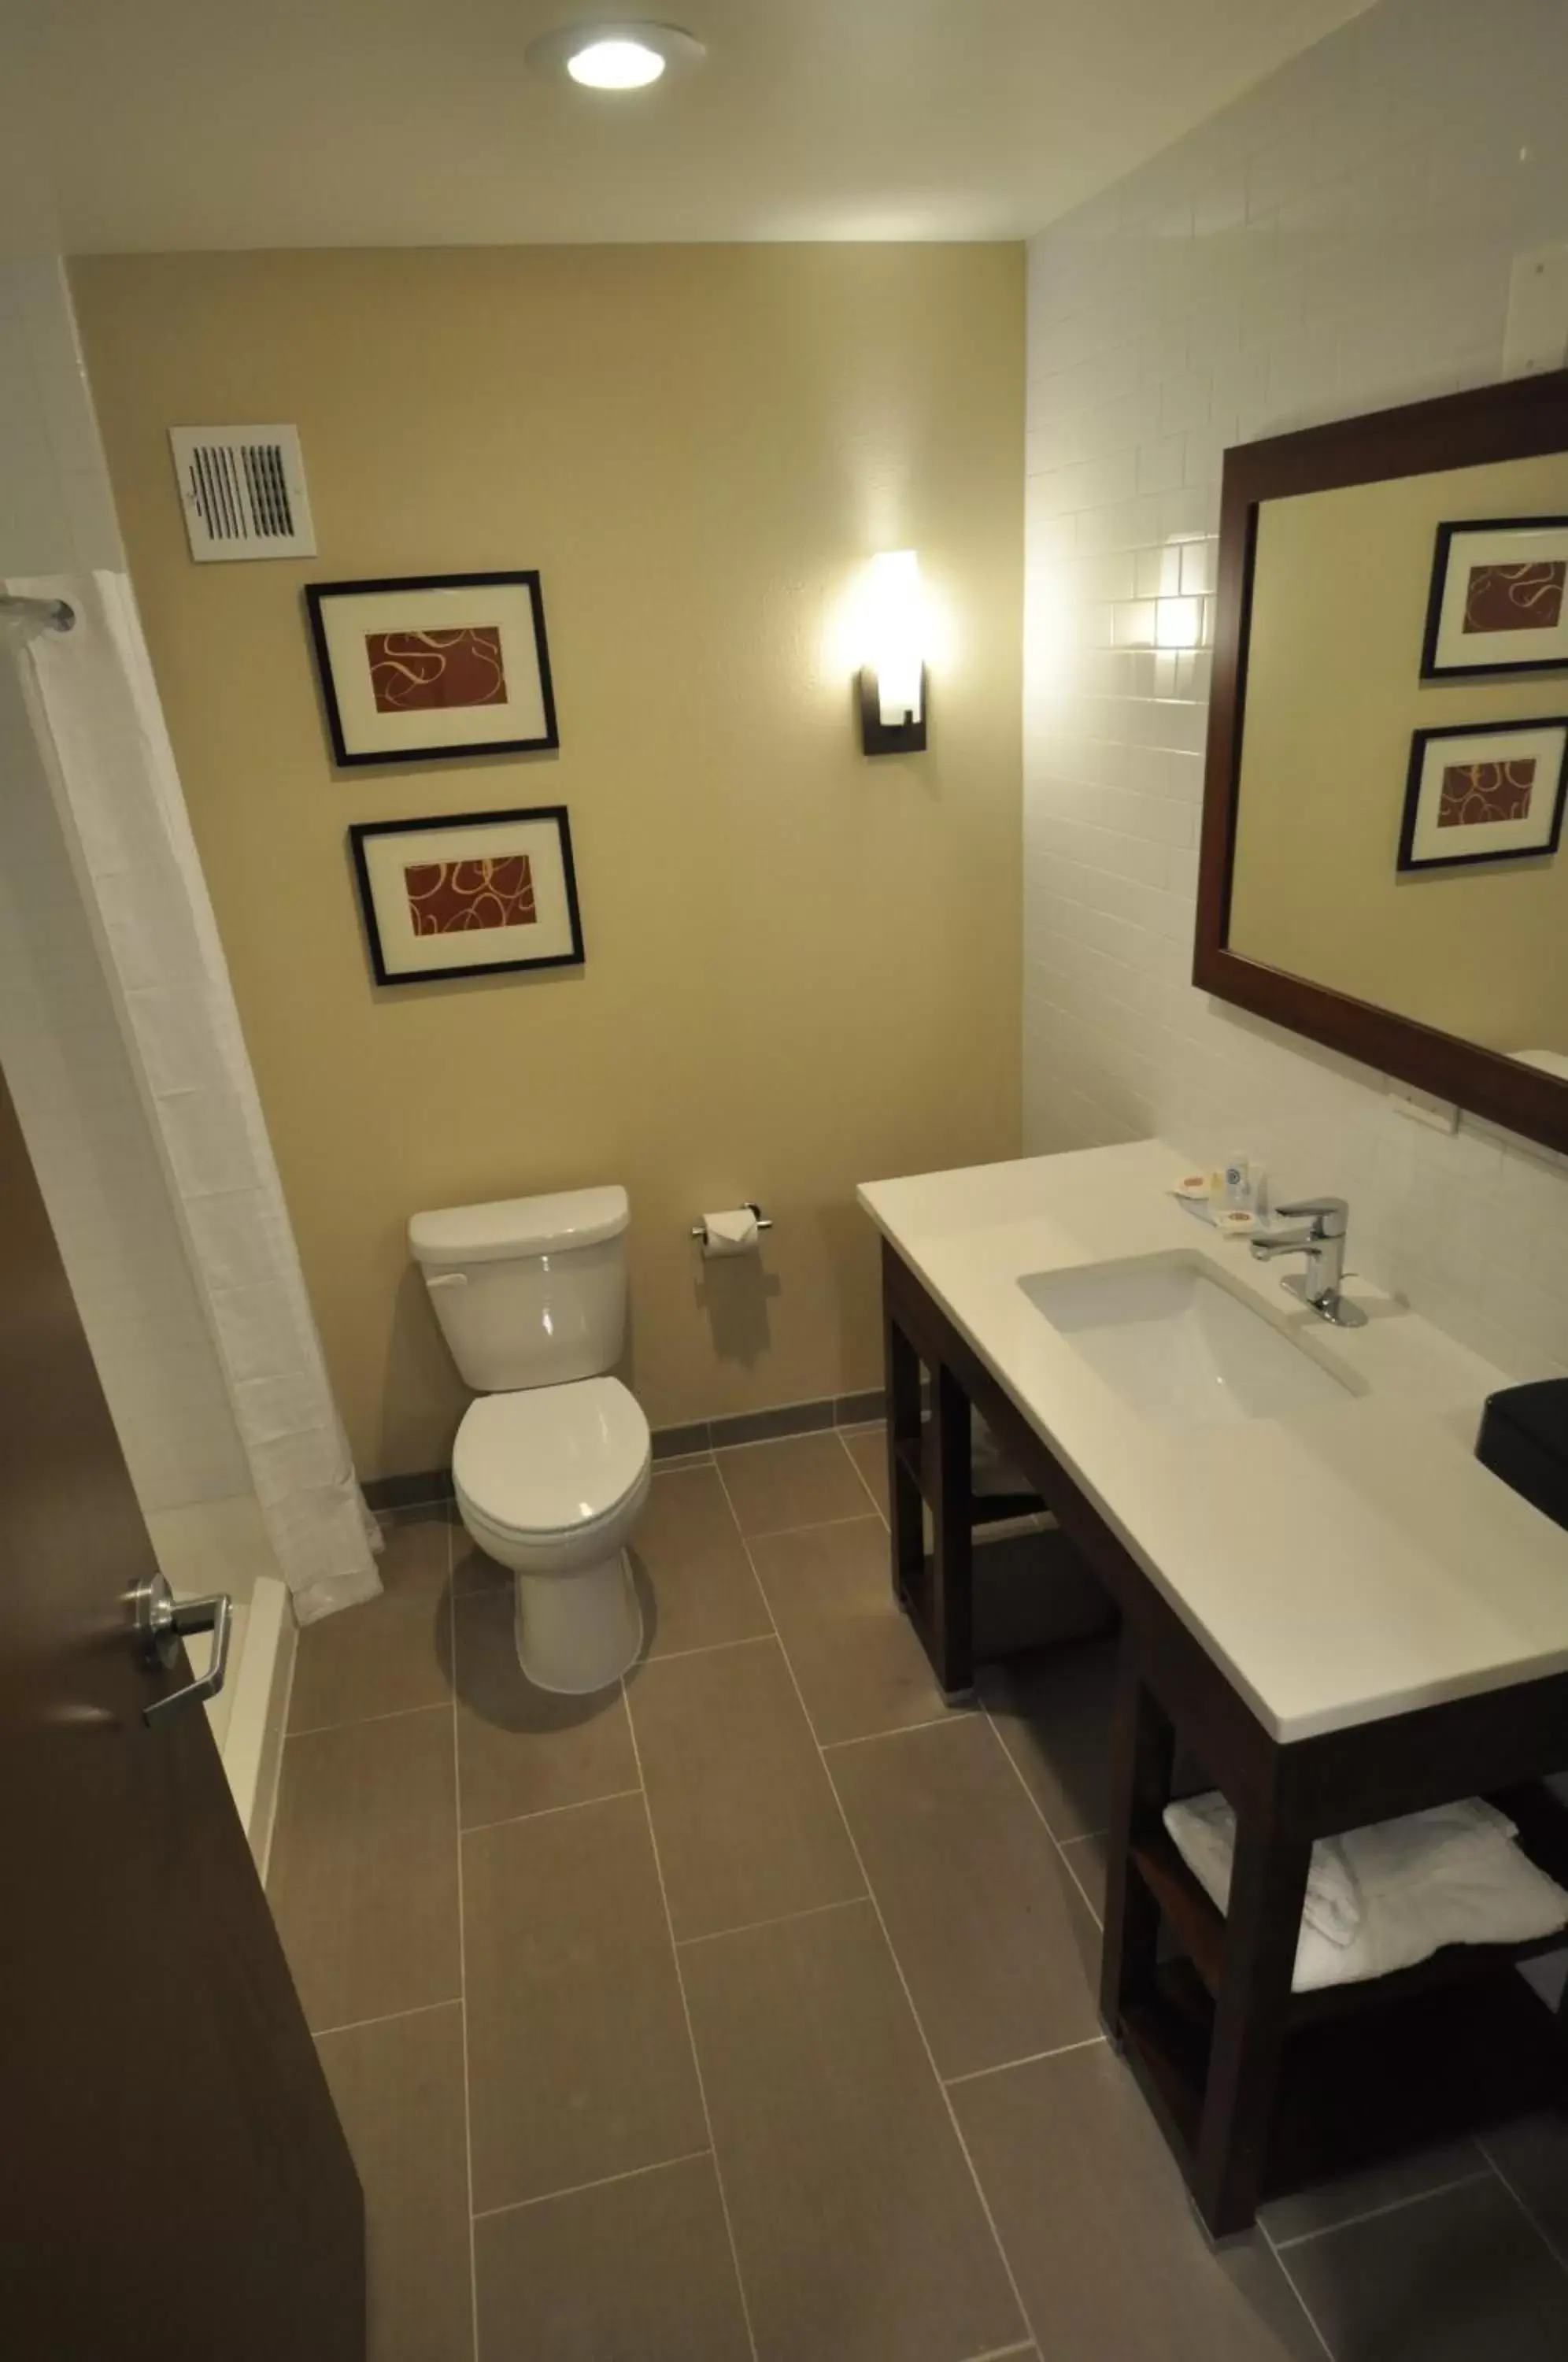 Toilet, Bathroom in Comfort Inn & Suites Aberdeen